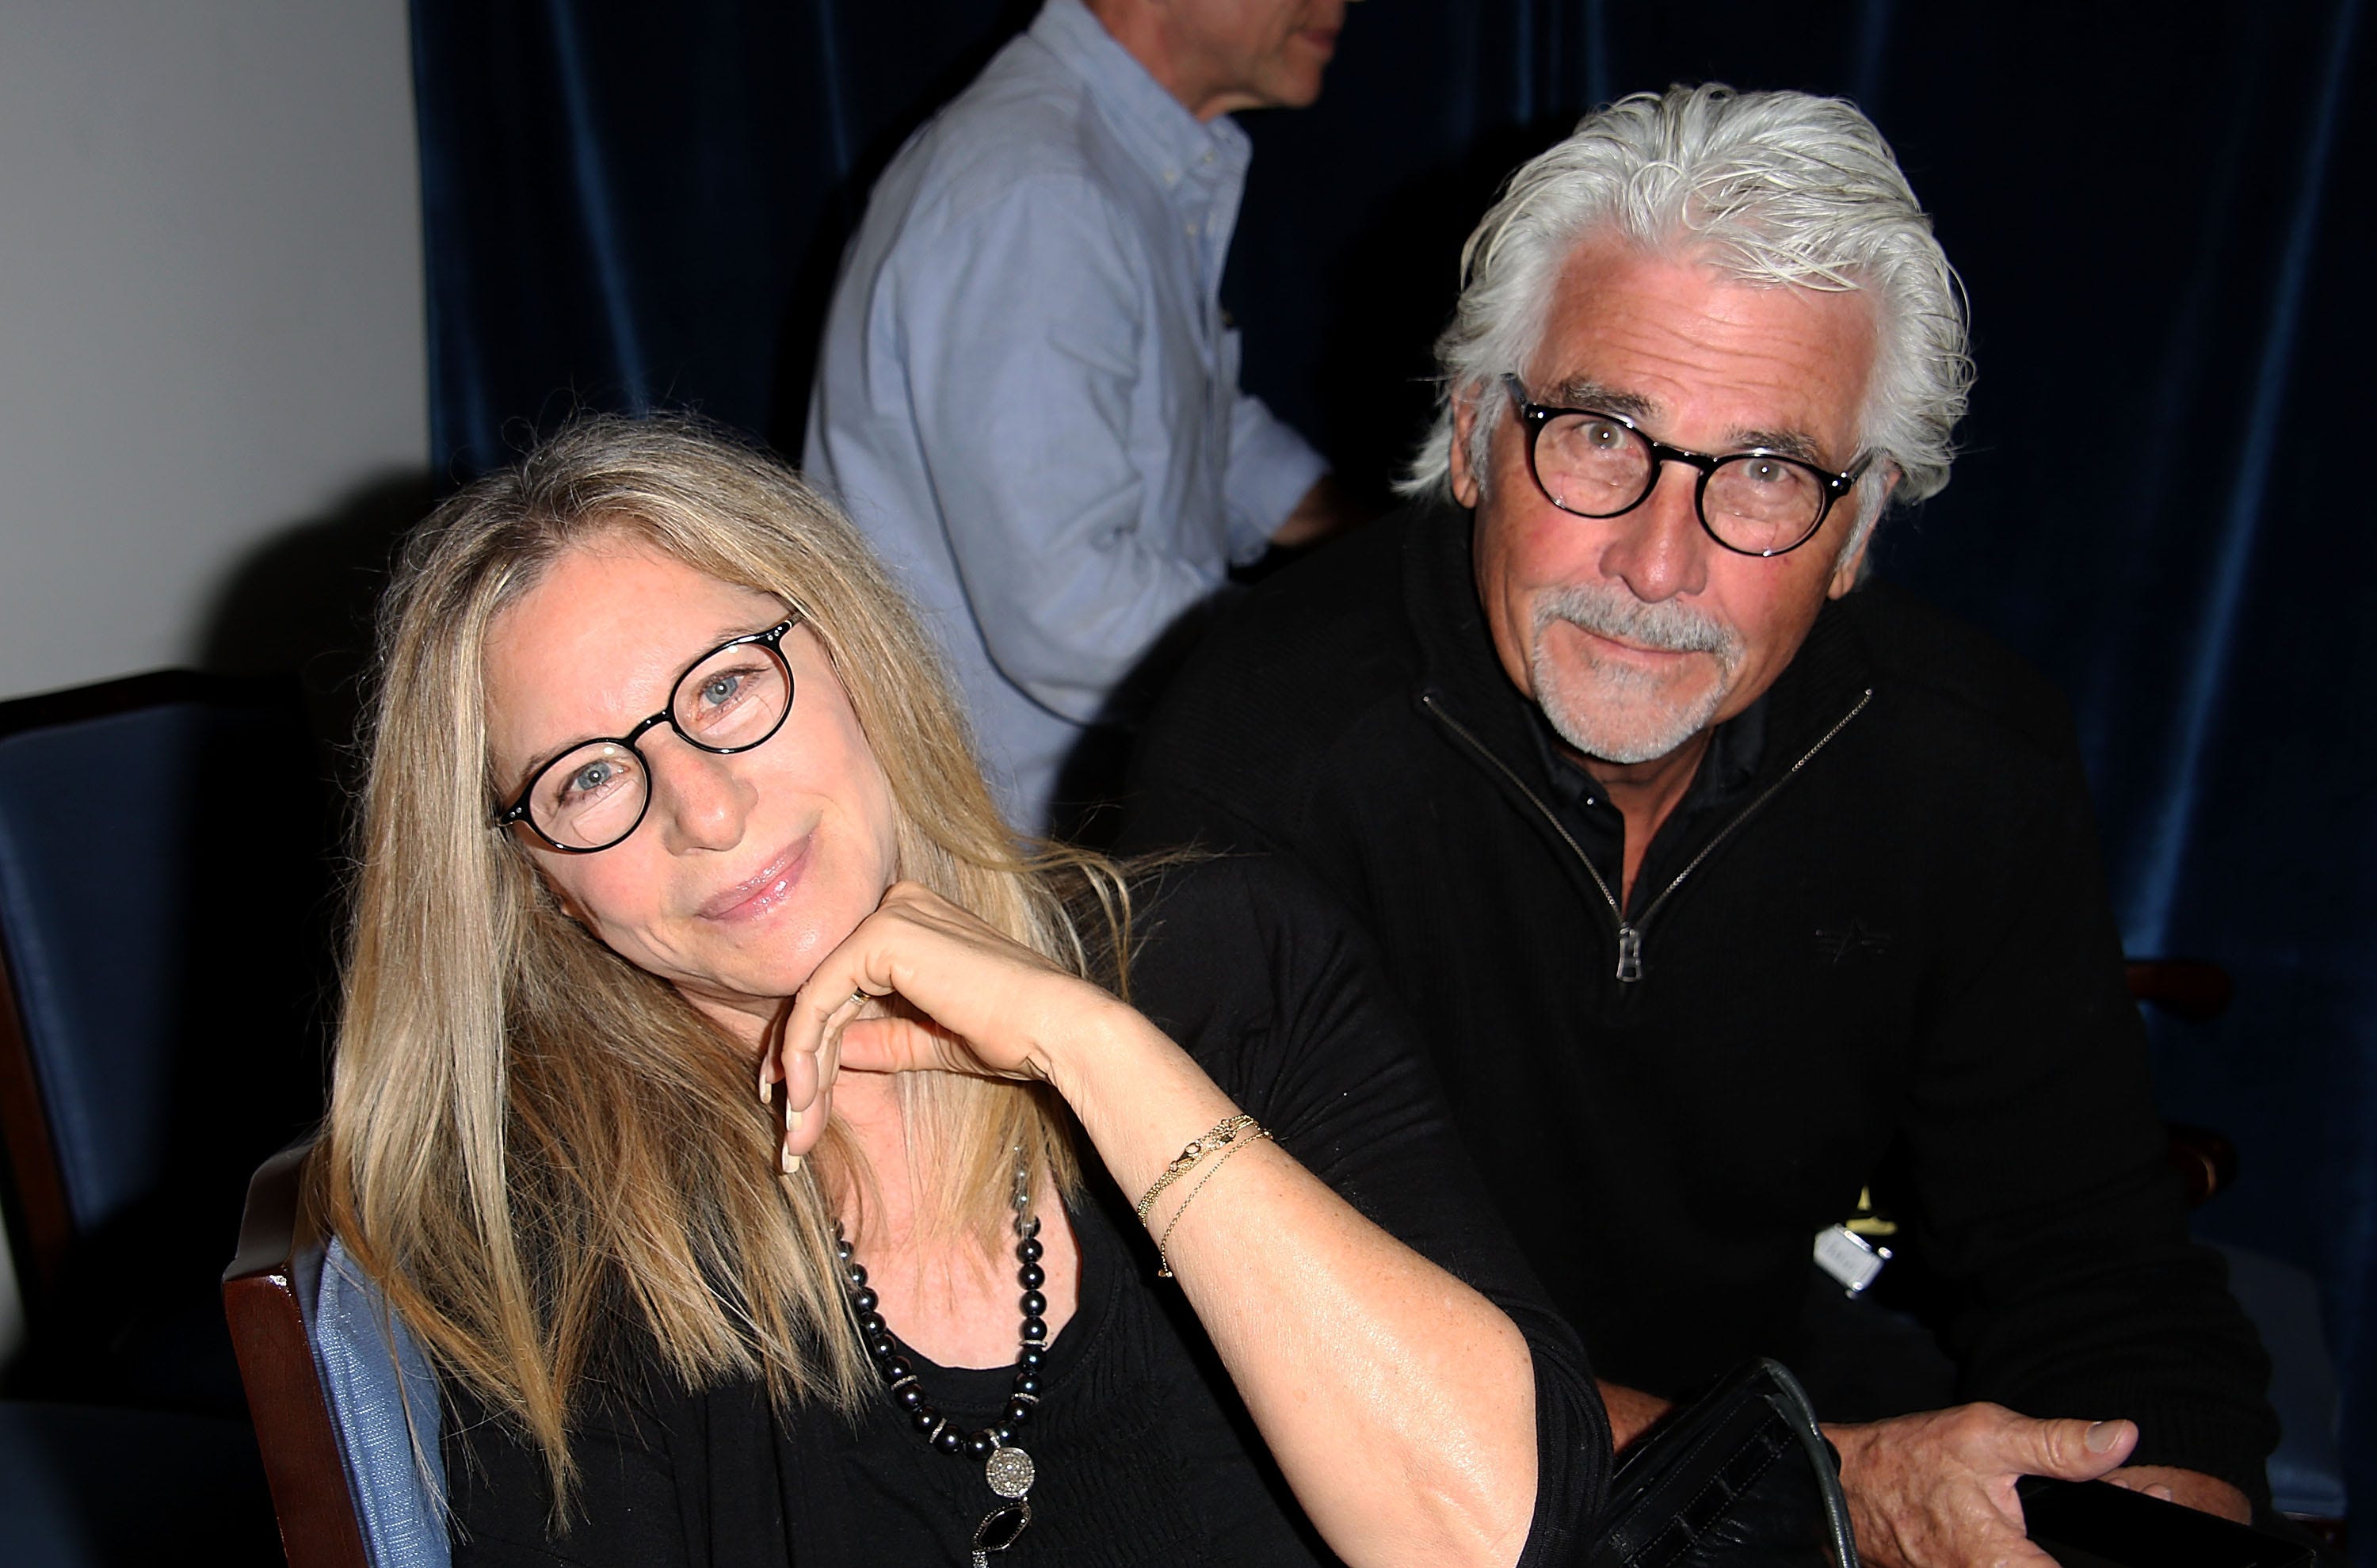 Barbra Streisand, im schwarzen Hemd und mit Brille, lächelt in die Kamera, während Ehemann Jame Brolin, ebenfalls im schwarzen Hemd und mit Brille, hinter ihr sitzt.